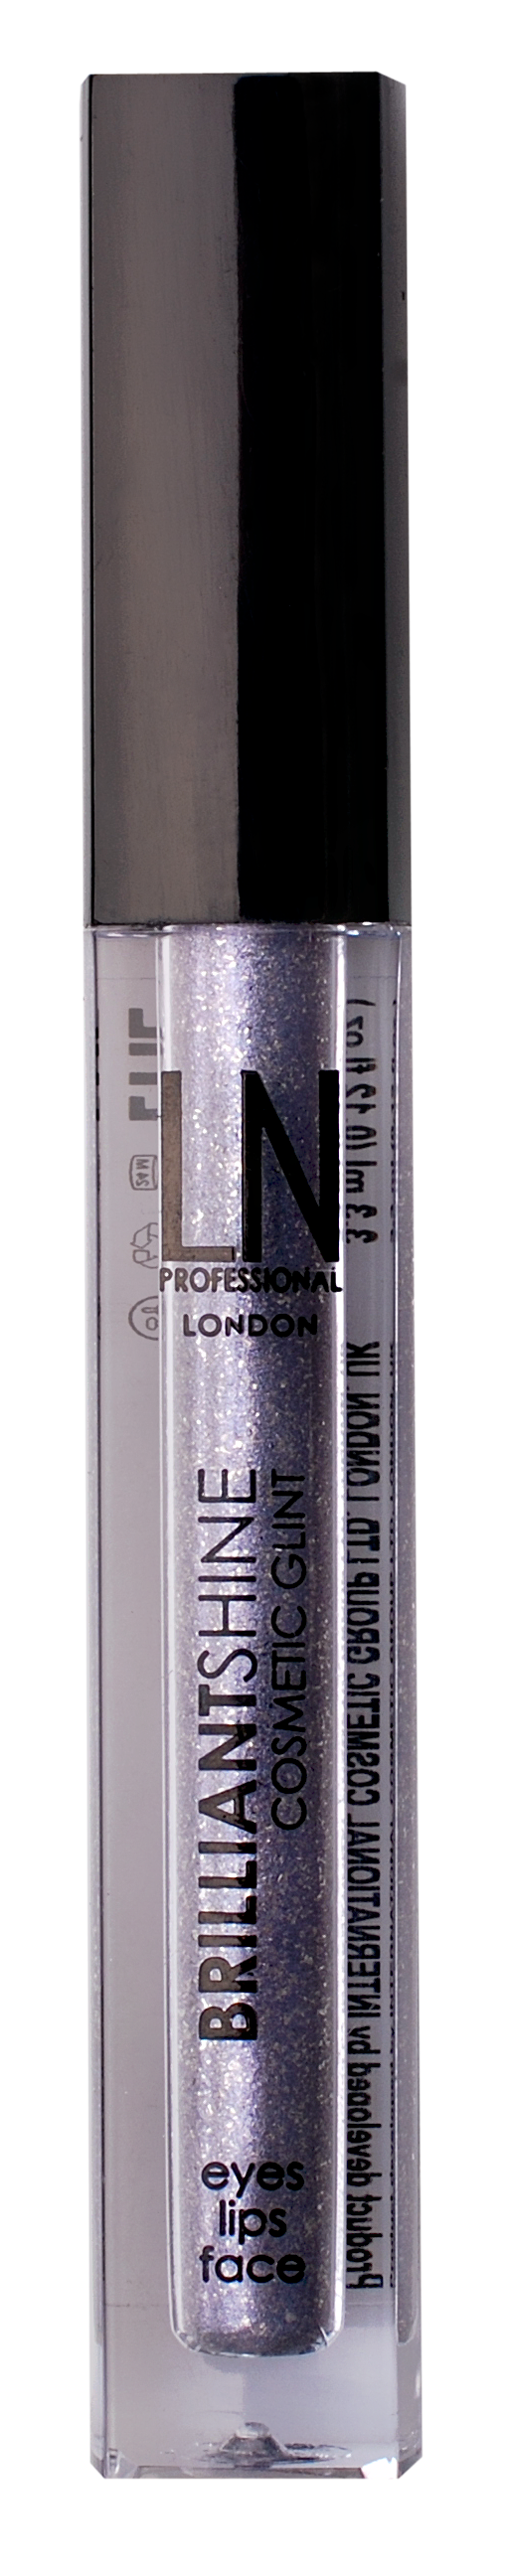 Рідкий глітер для макіяжу LN Professional Brilliantshine Cosmetic Glint, відтінок 08, 3,3 мл - фото 1